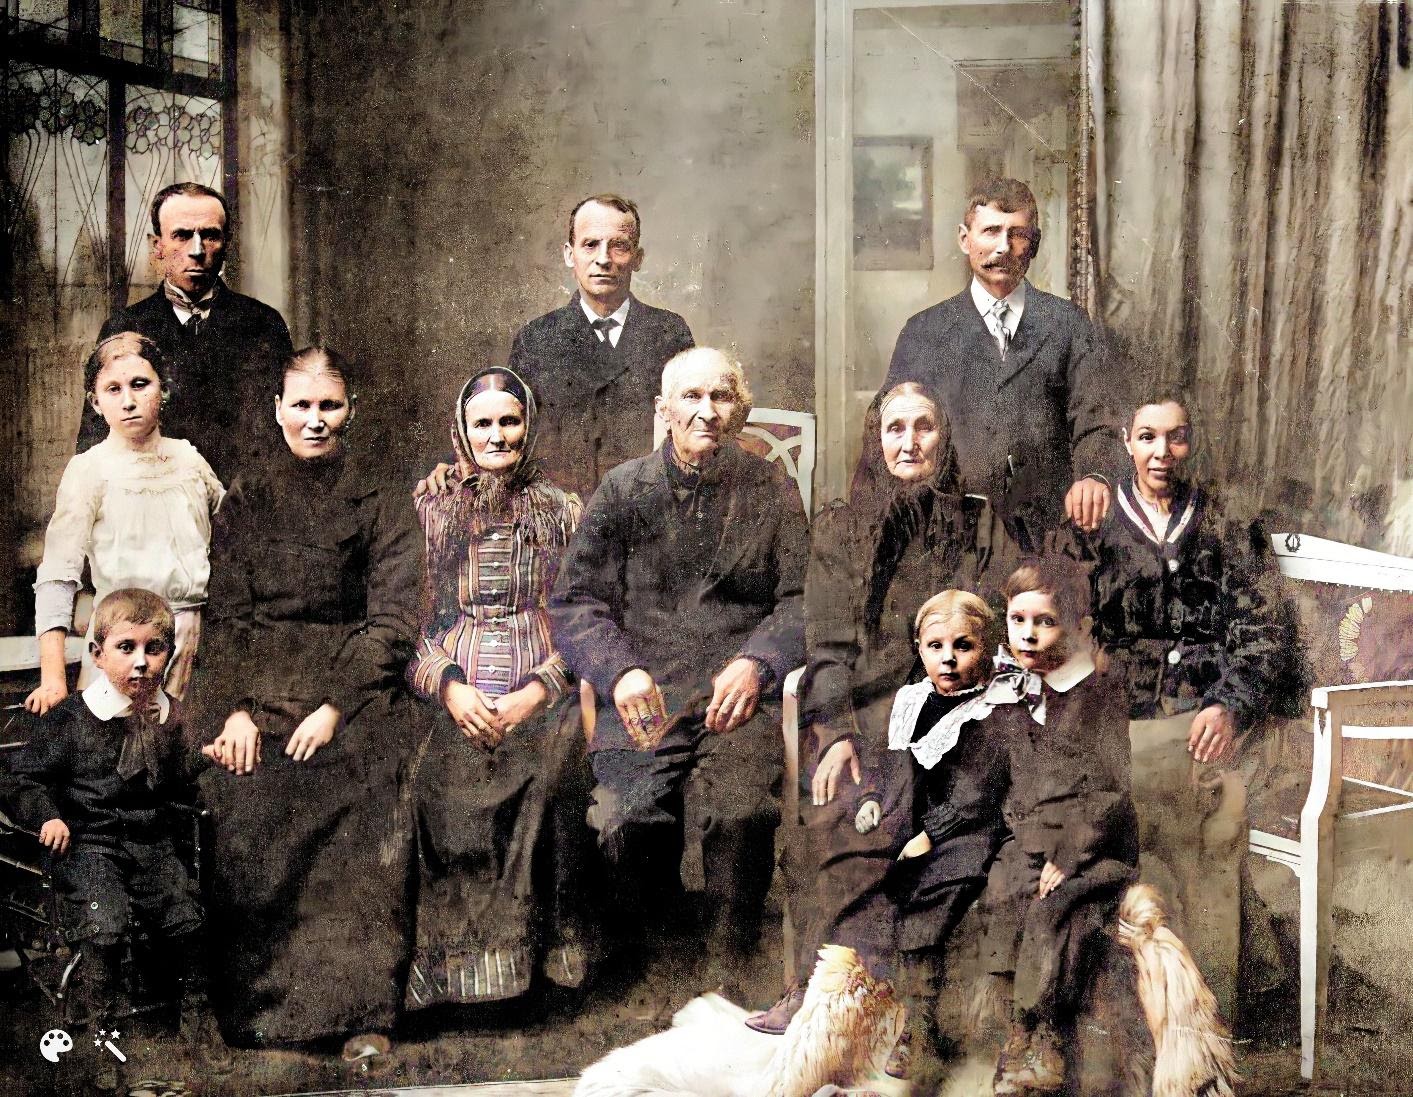 Família de Josef Bayer III., Meu bisavô (última fila, extrema direita), por volta de 1912, incluindo minha bisavó, sua segunda esposa Anna Bayerová, nascida Vacovská, e seus pais (meus bisavós), Josef Bayer II. e Petronilla Bayerová.